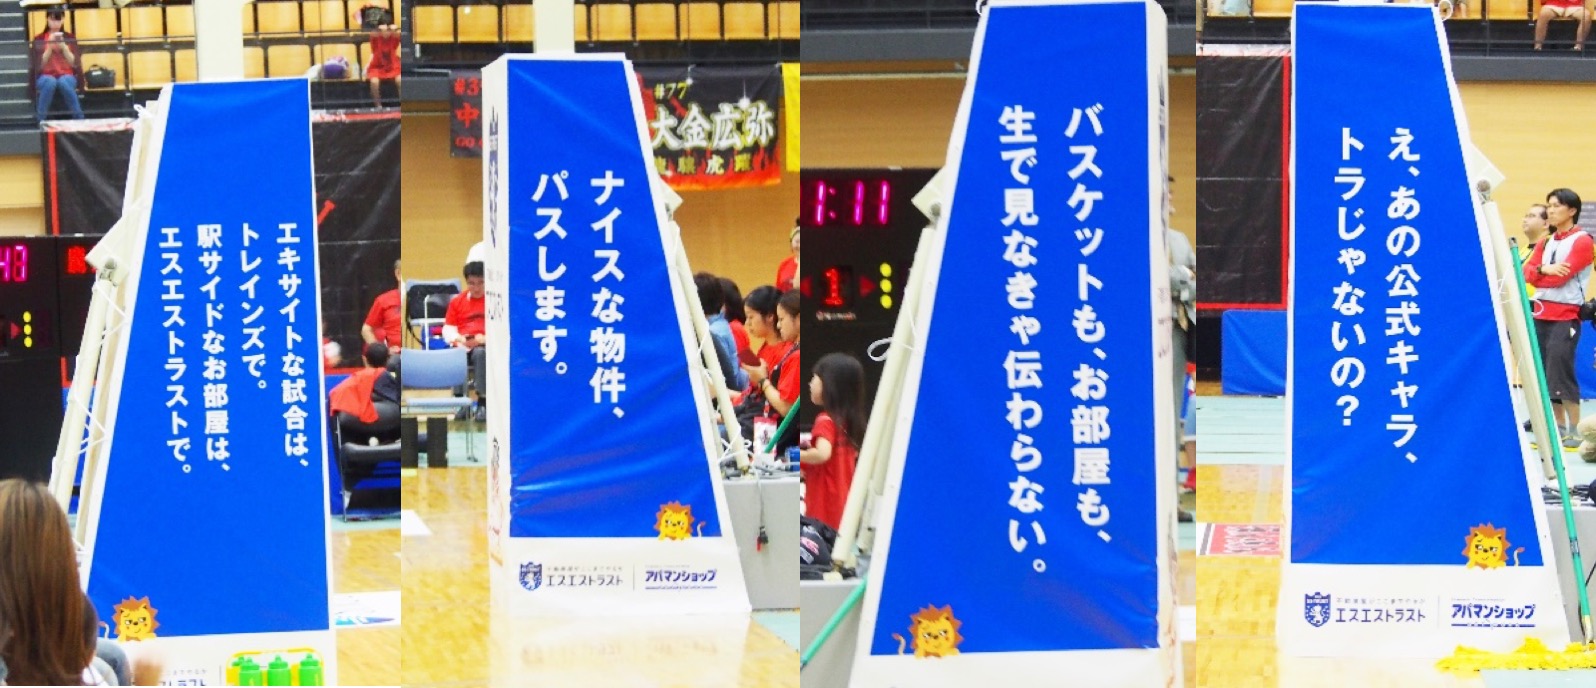 東京八王子ビートレインズバスケットゴールカバー